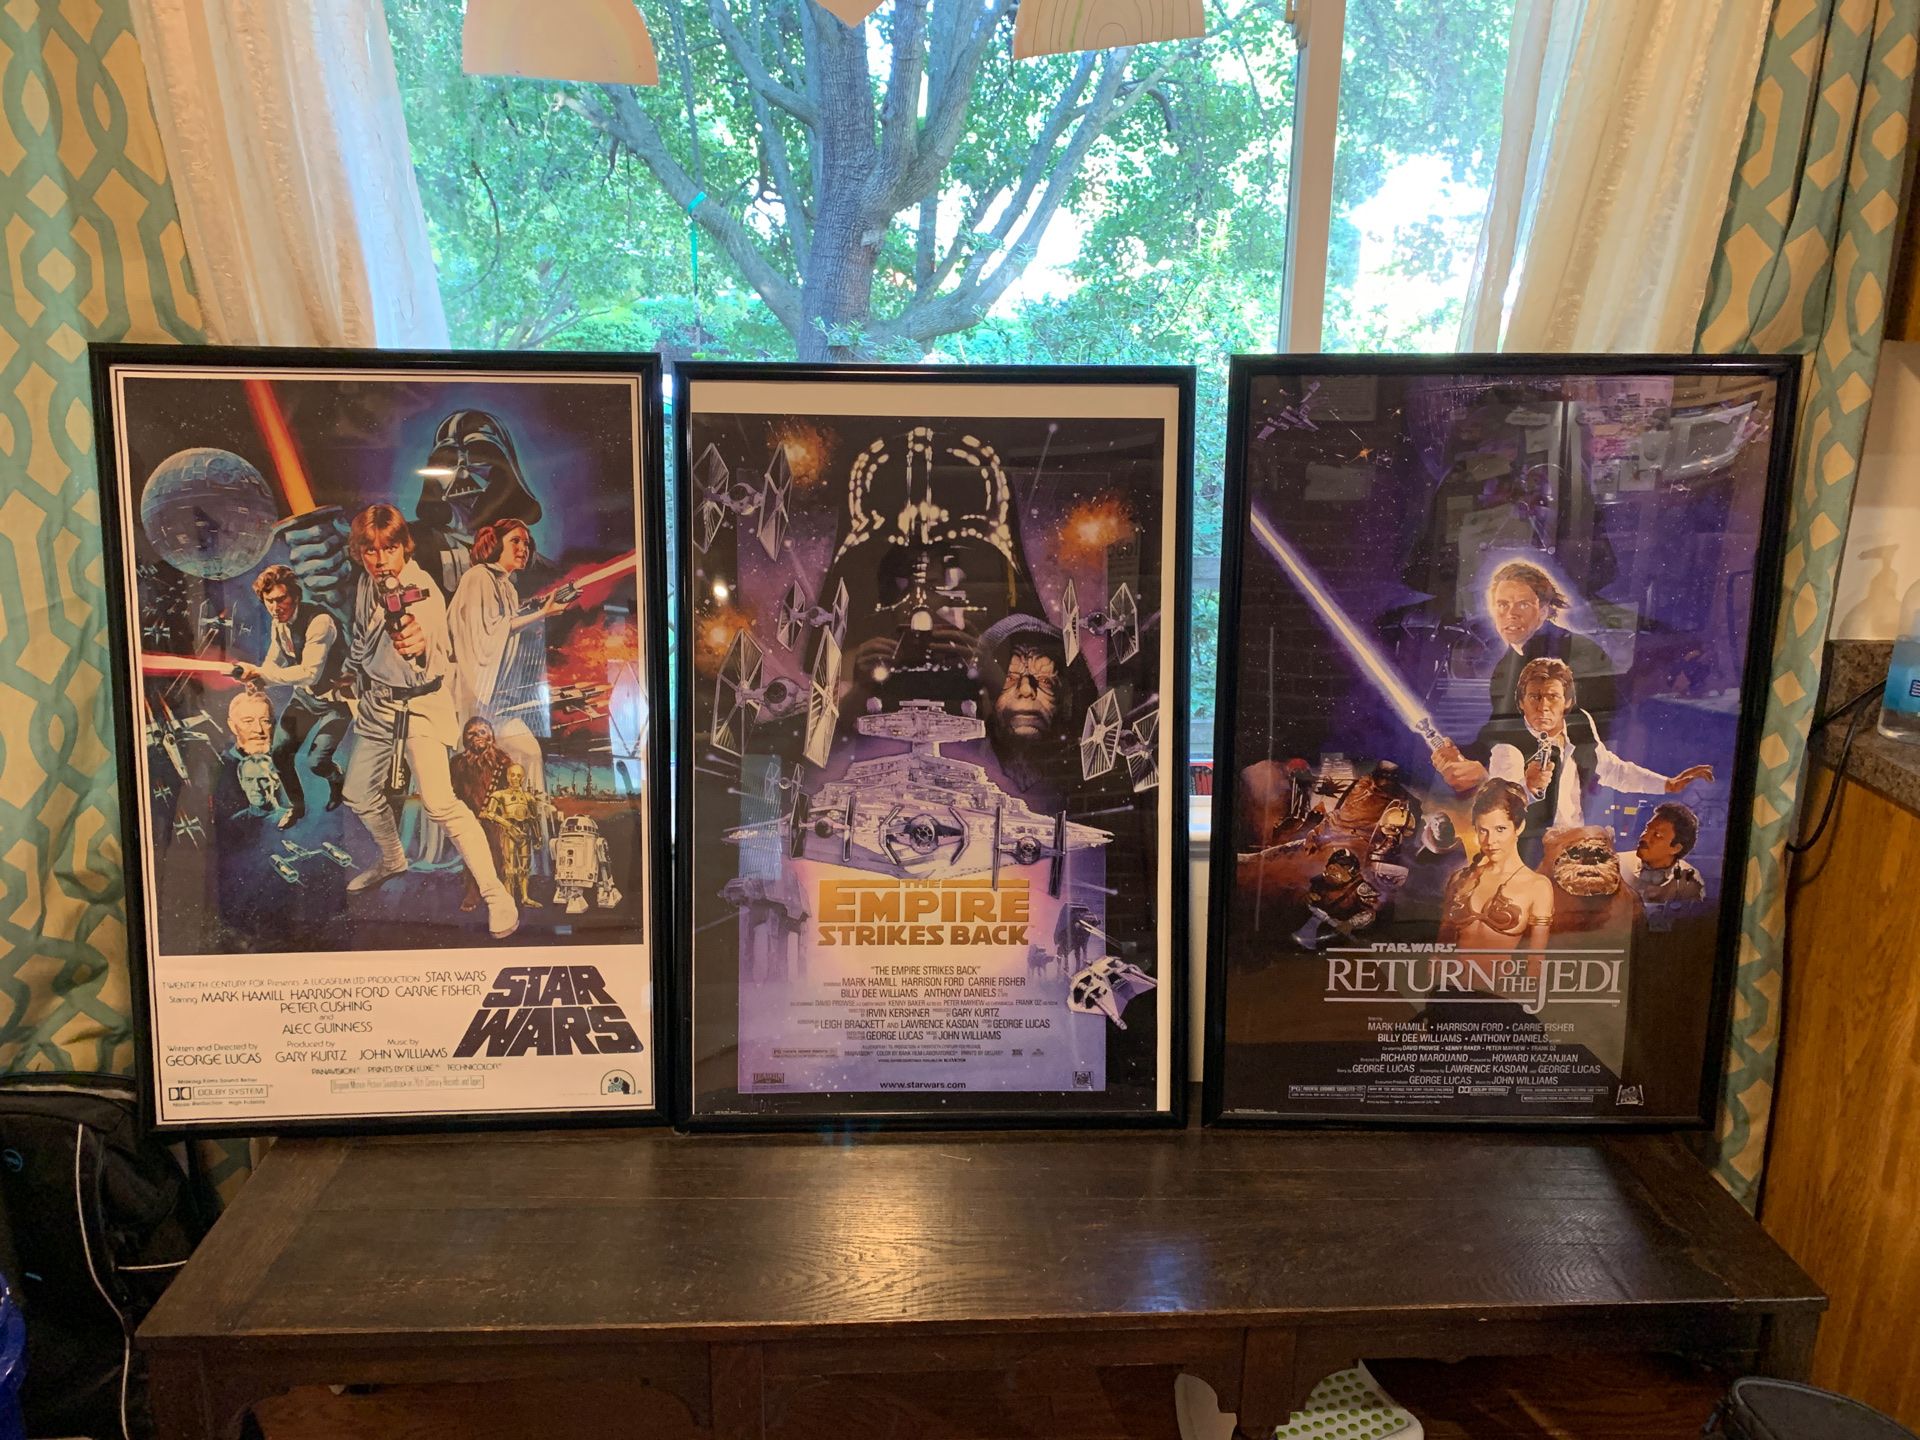 Framed Star Wars posters (not vintage)